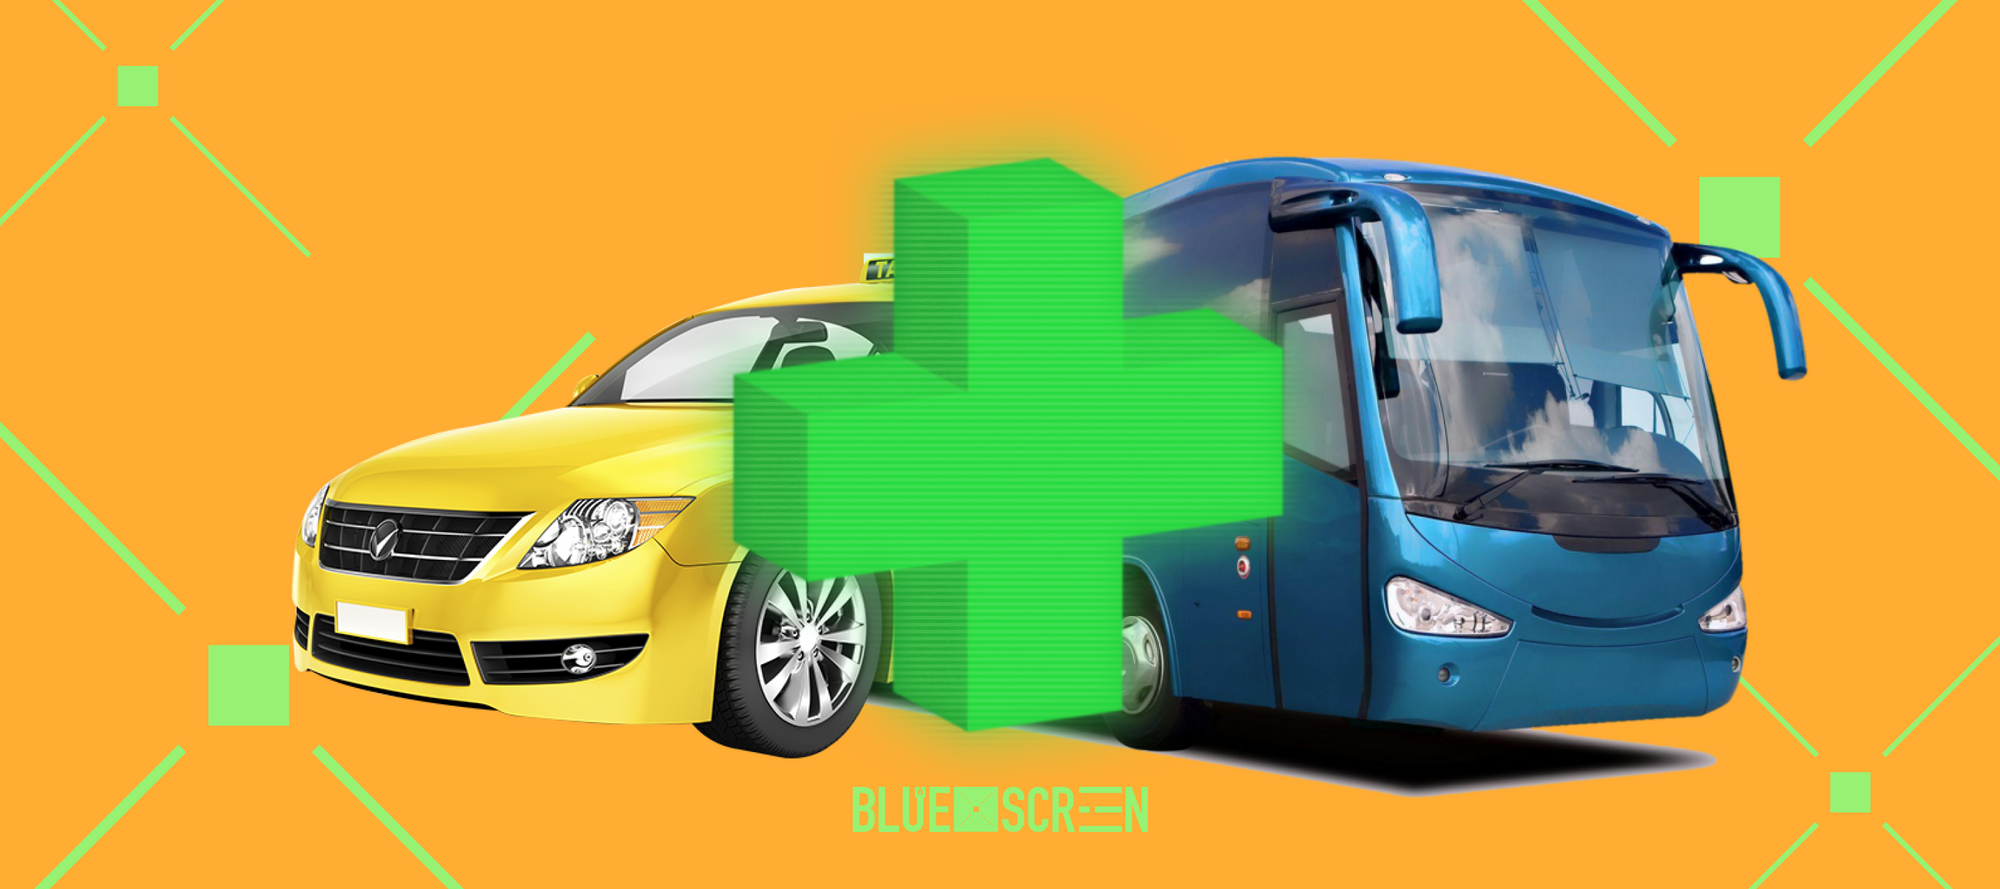 Водители автобусов и такси в РК будут проходить медосвидетельствование онлайн